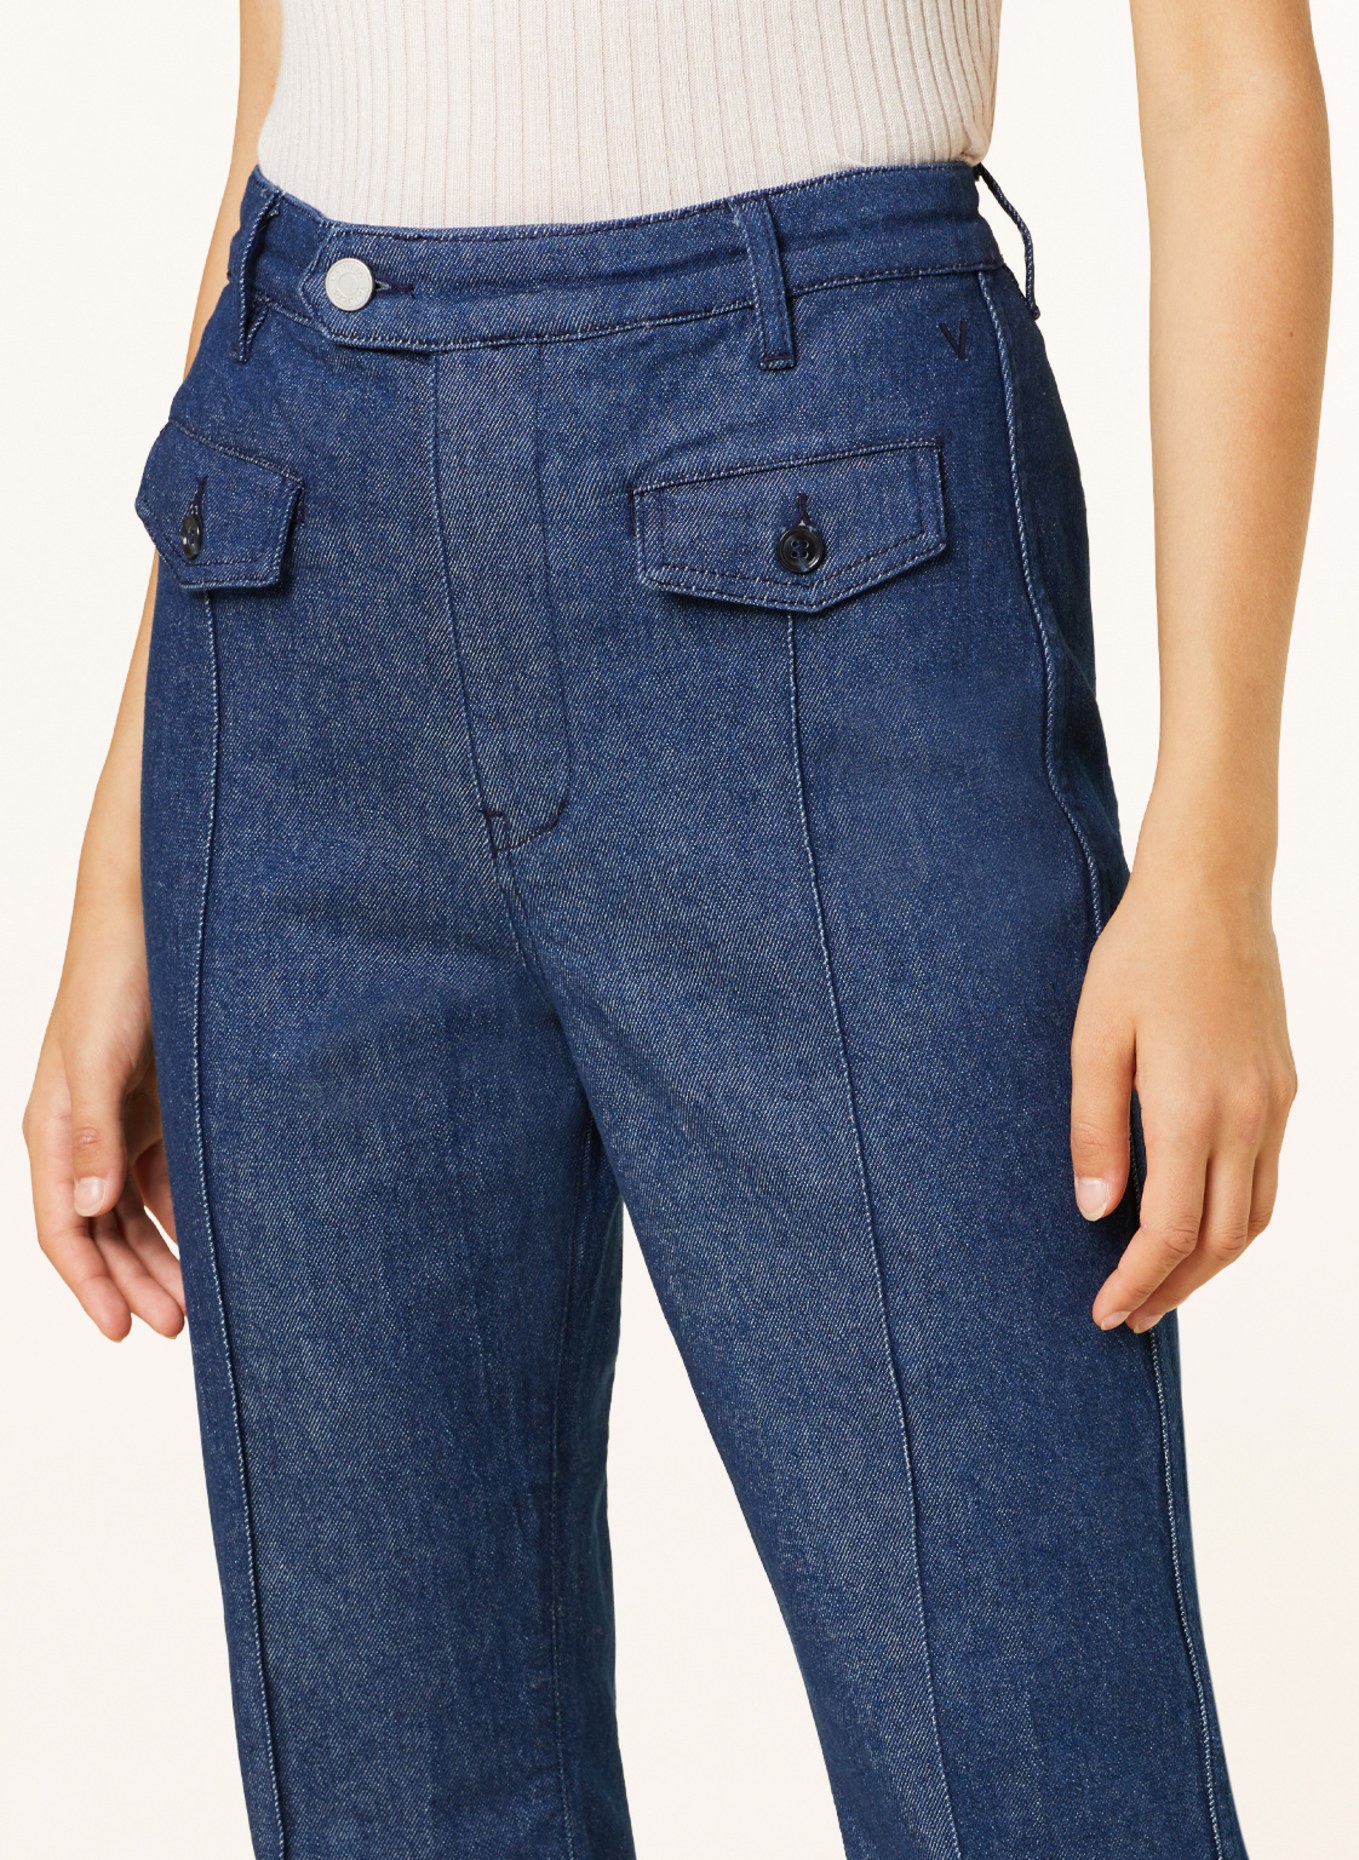 VANILIA Bootcut jeans, Color: 882 Jeans (Image 5)